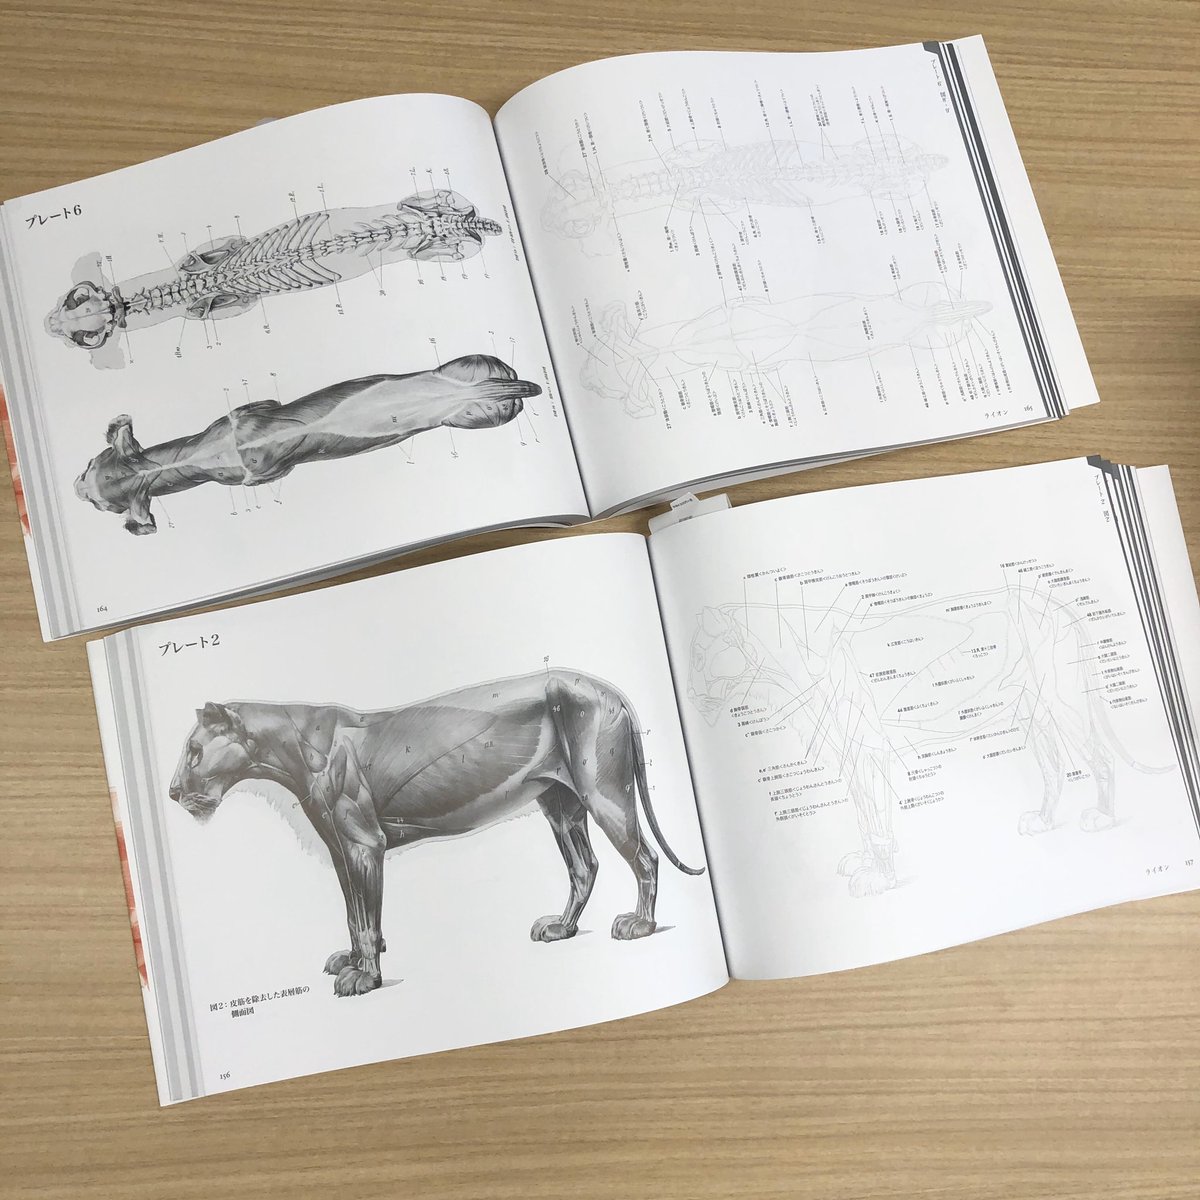 伊豆の美術解剖学者 エレンベルガーの動物解剖学 実物が届きました 発売は1 31 動物を表現するあらゆるアーティストにとって良いリファレンスとなりますように